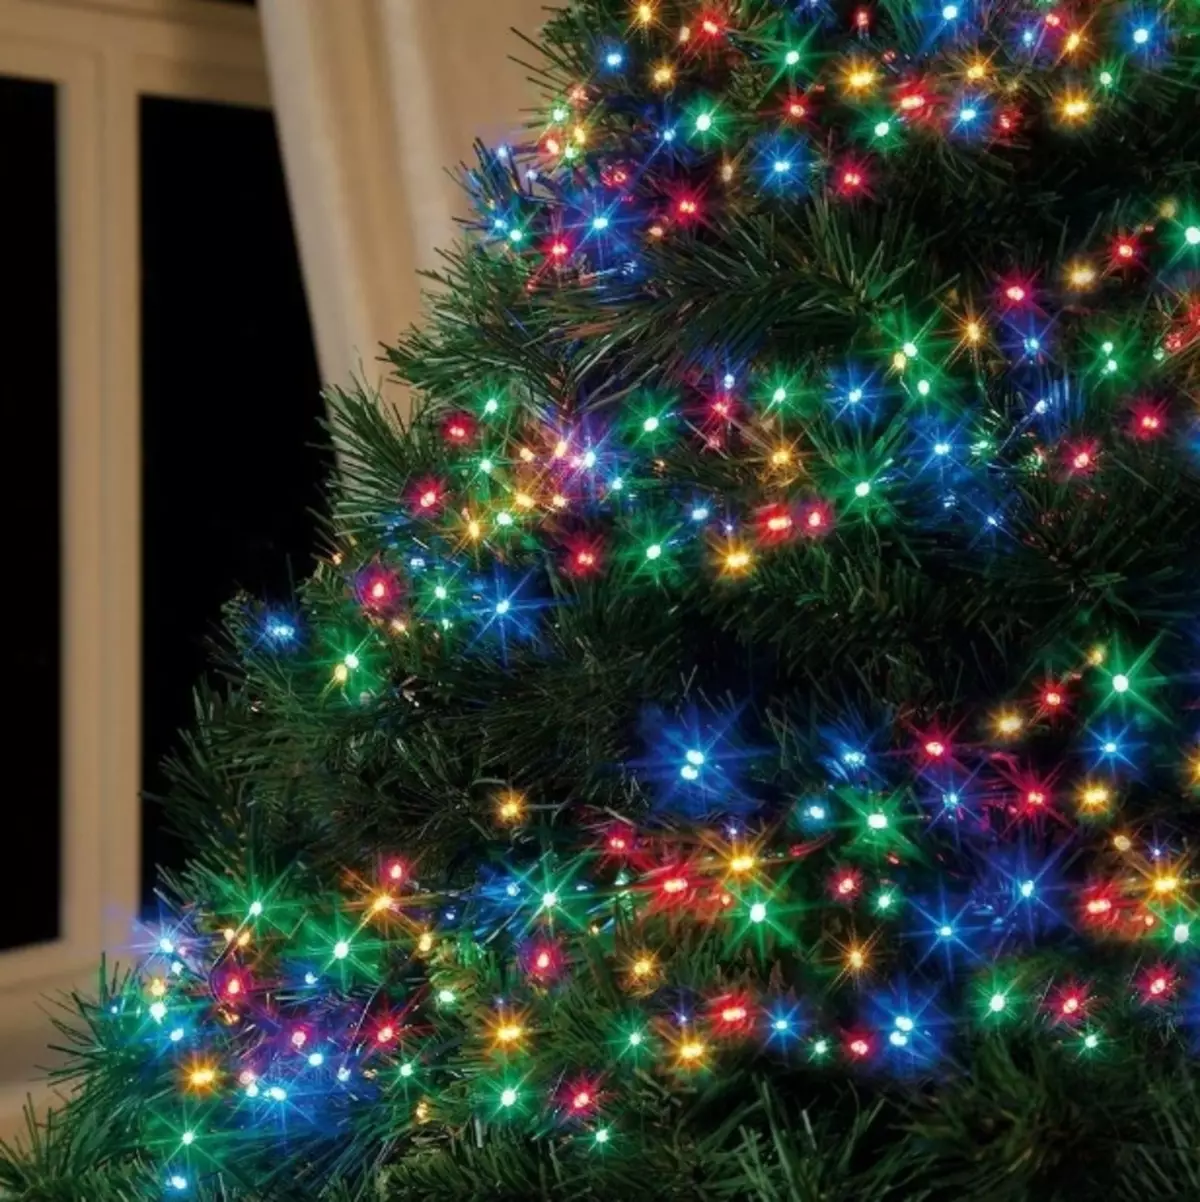 Ako zdobí vianočný strom s vencom? Ako správne a krásne obliekať to podľa schémy s žiariace elektrickej girlandami a ďalšie veniec? 7630_14